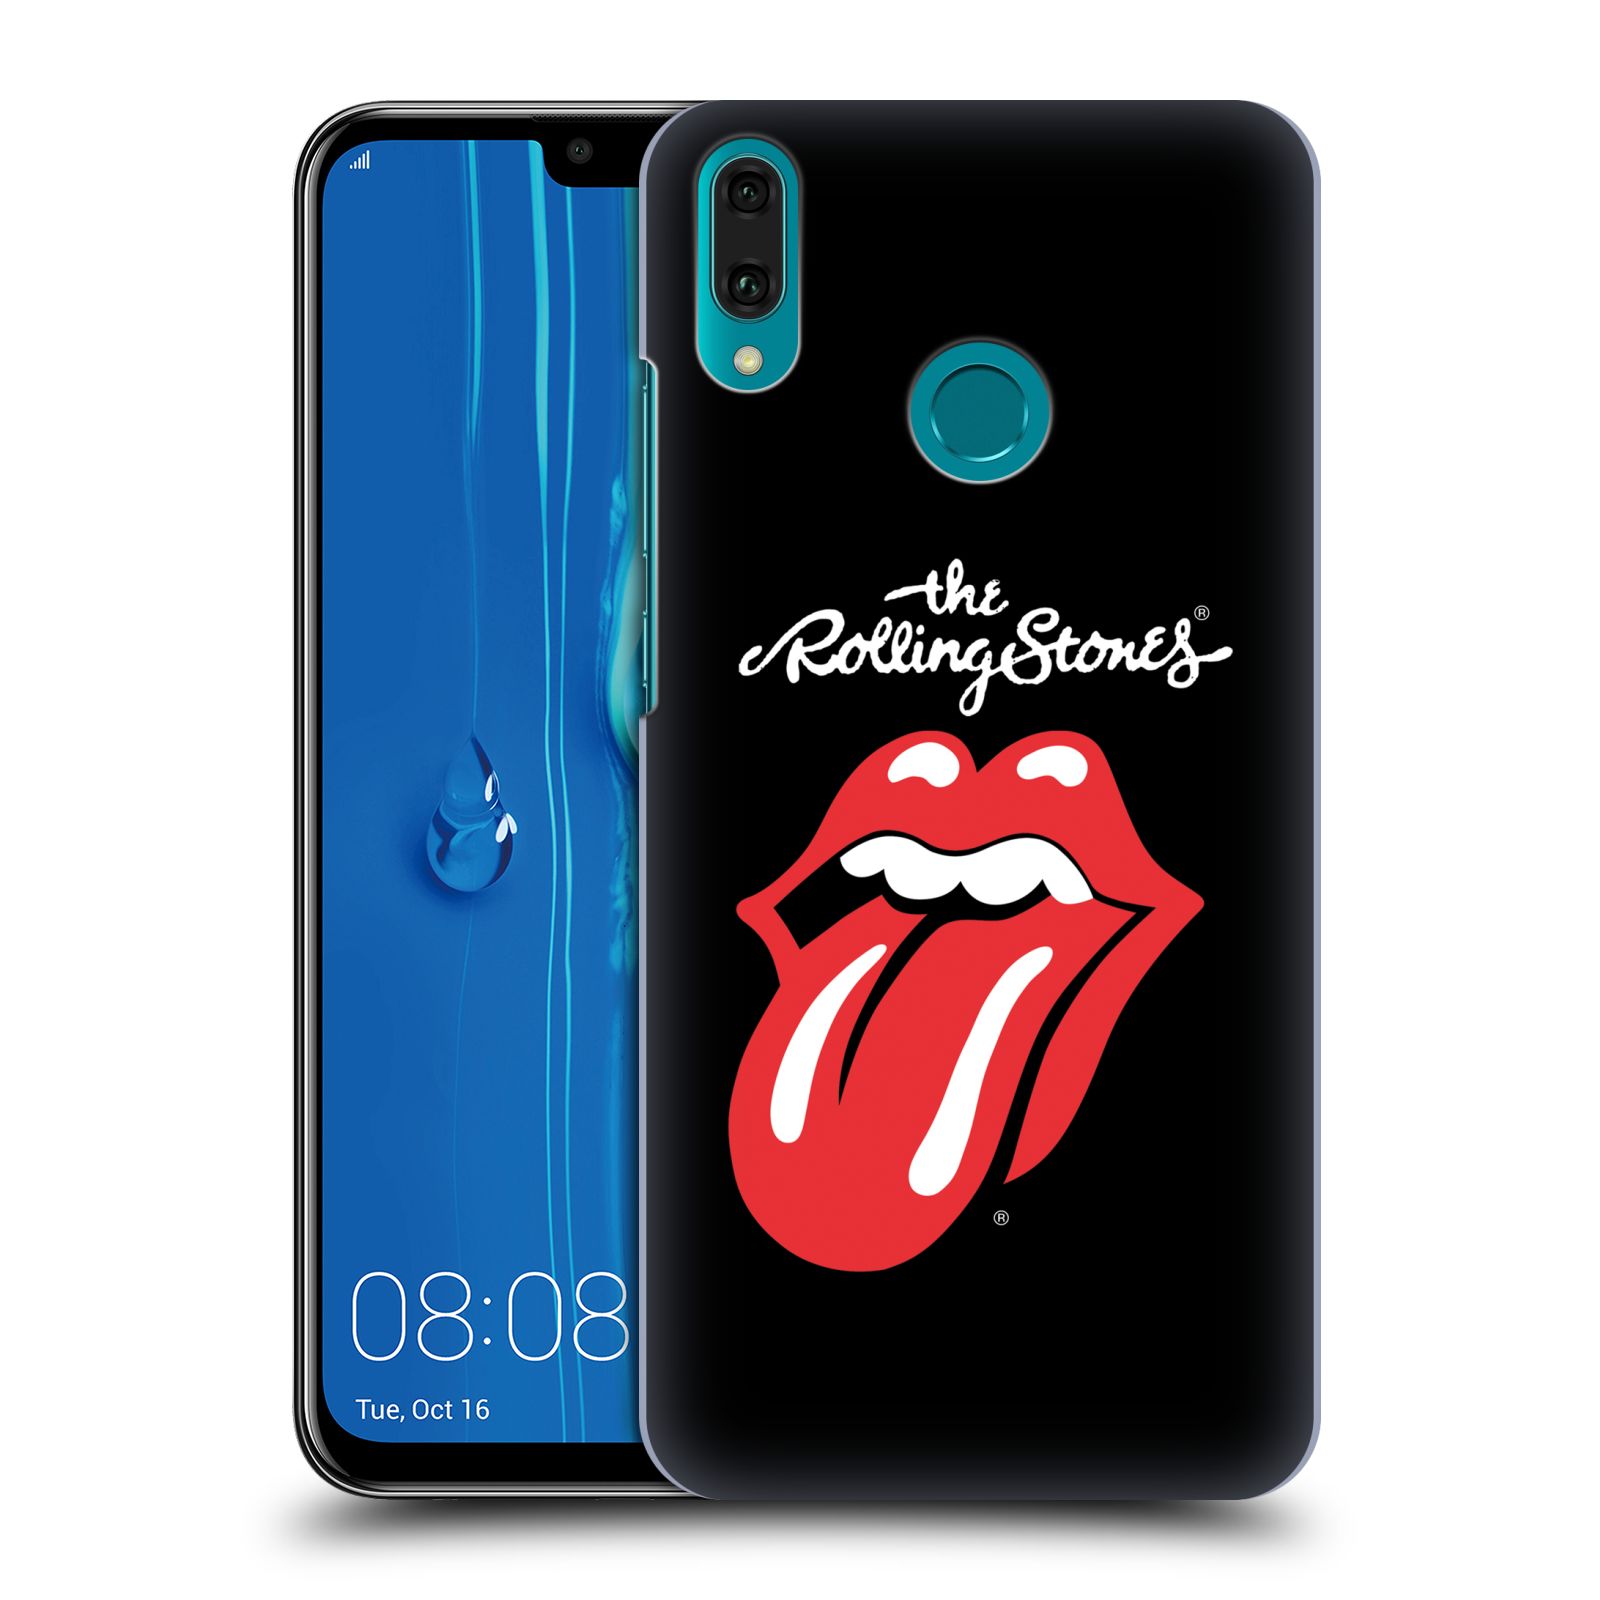 Pouzdro na mobil Huawei Y9 2019 - HEAD CASE - rocková skupina Rolling Stones znak černá a červená